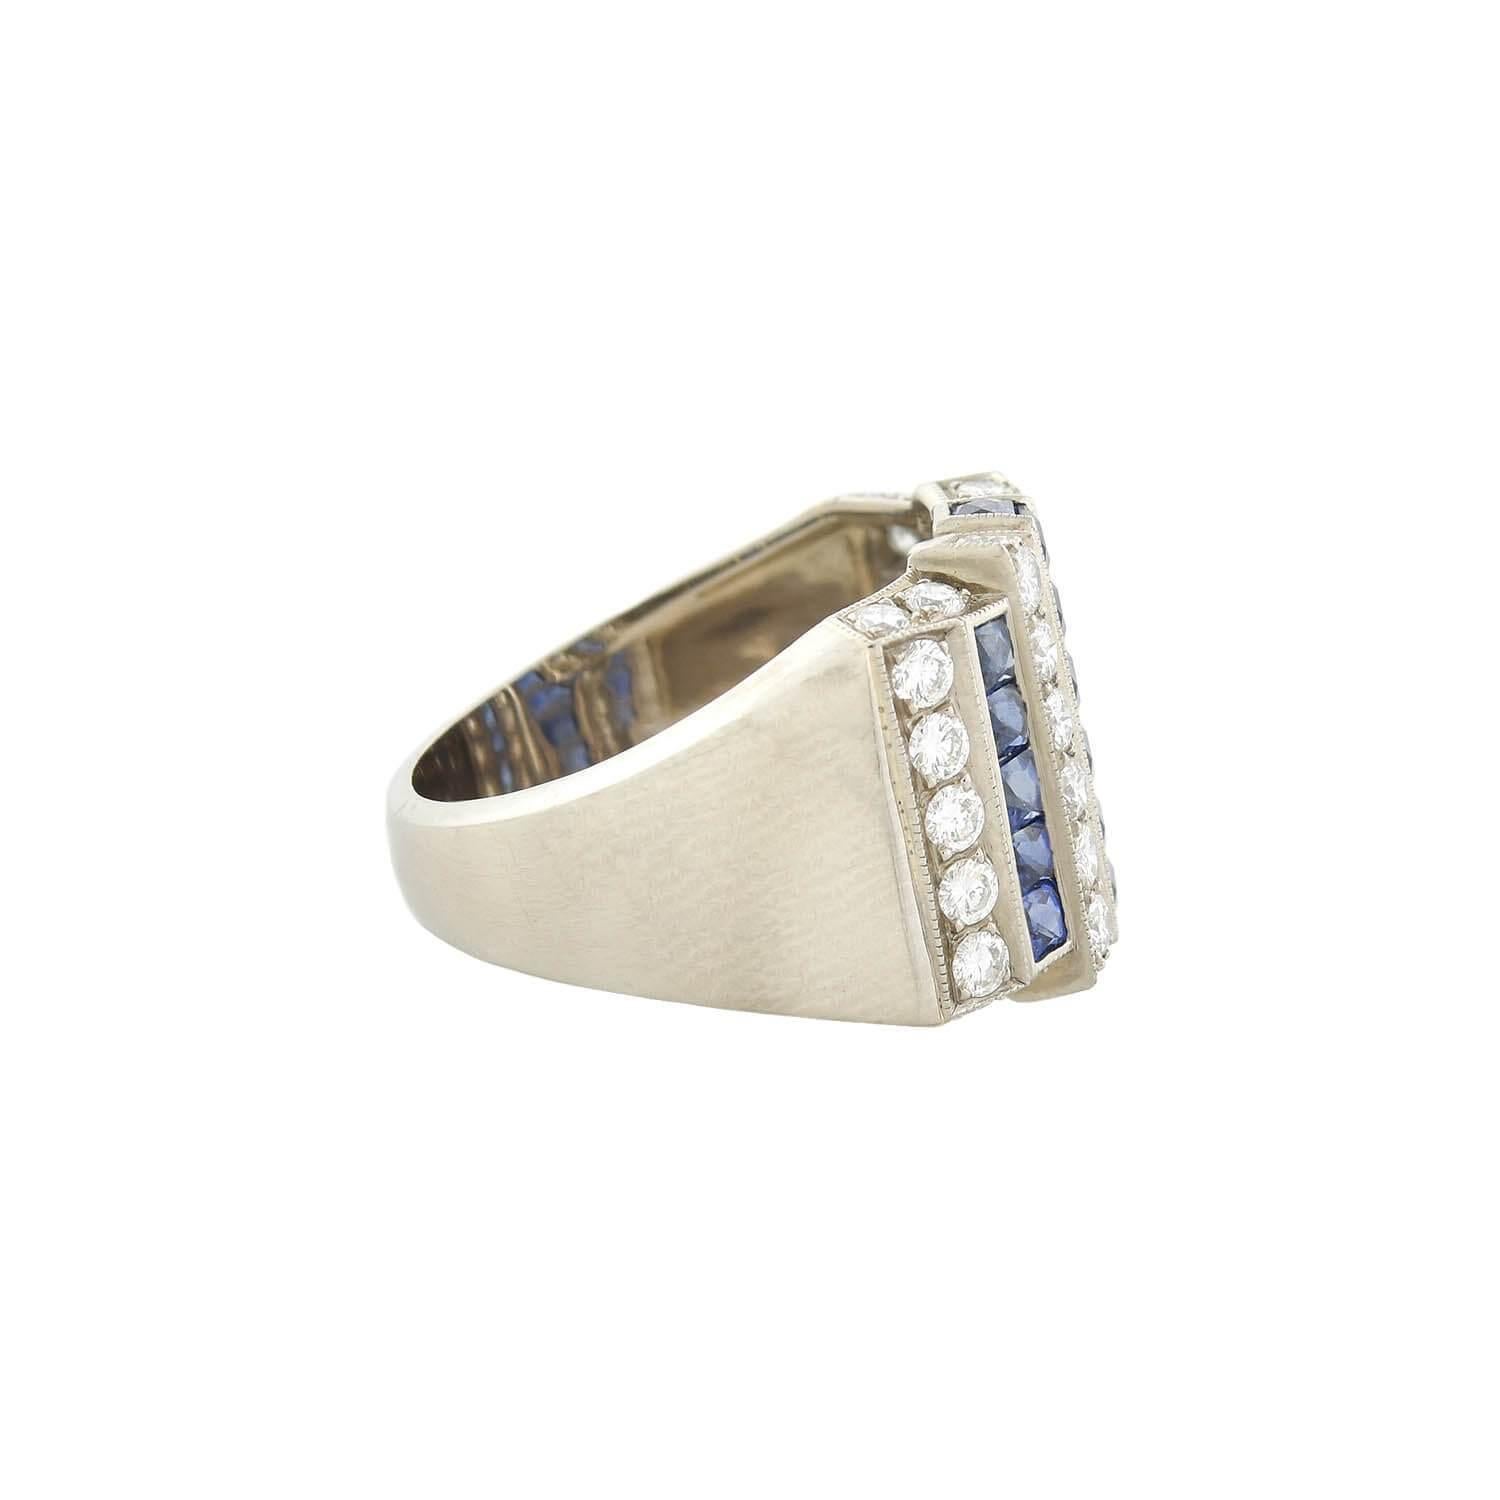 Ein kühner Ring mit Diamanten und Saphiren aus der Zeit des Art déco (ca. 1930)! Dieses fabelhafte Stück aus 18-karätigem Weißgold ist auf der Vorderseite mit einem auffälligen Edelsteinmuster versehen. Drei Reihen mit glitzernden Saphiren im